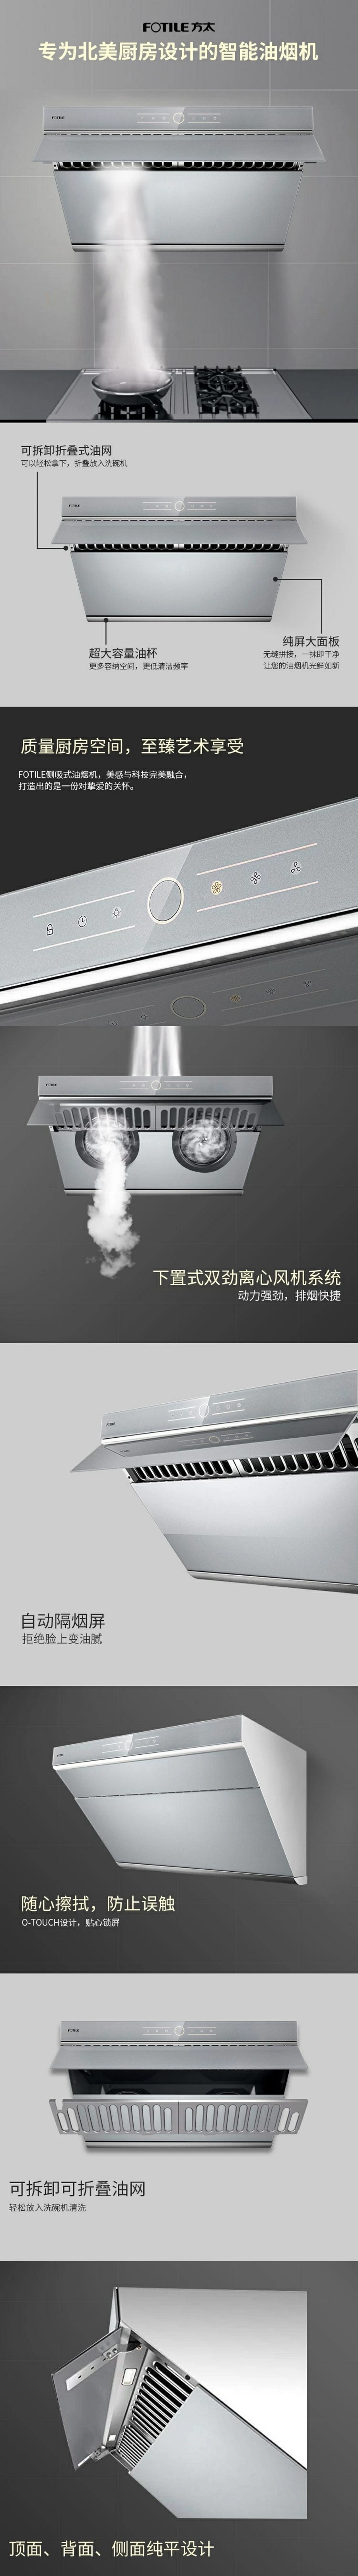 中國 FOTILE 方太 JQG7501.G 30吋側吸式油煙機 | 850CFM大風量 | 家用抽油煙機 | 觸控螢幕式開關 | 全自動隔煙屏 | 銀瑞灰